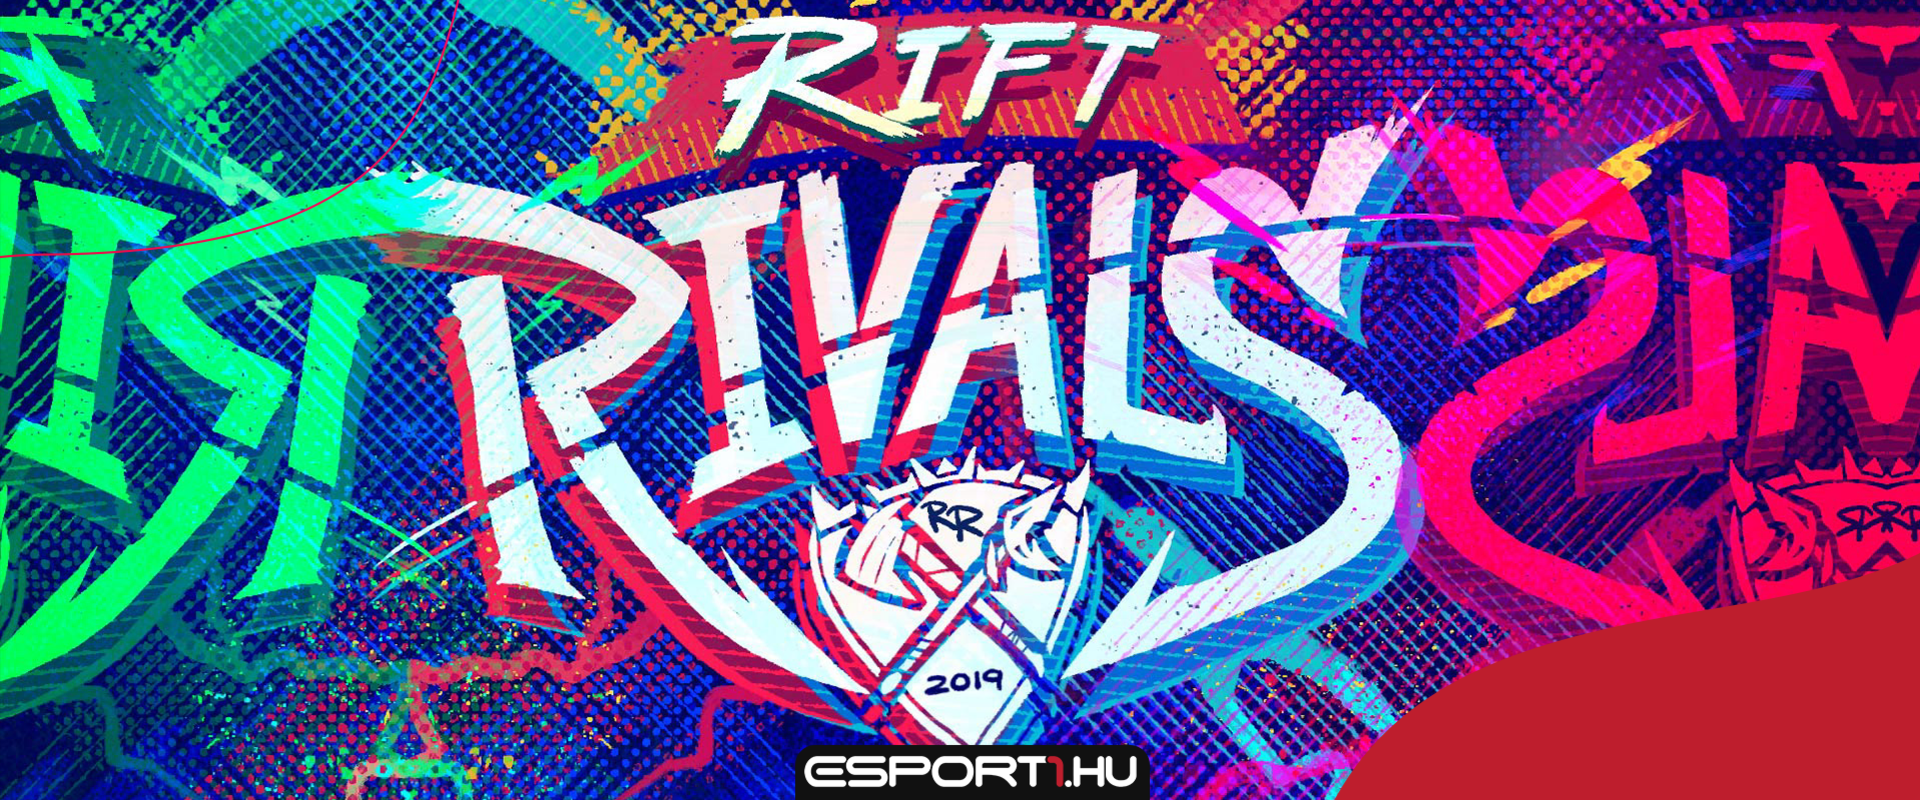 Csak két régióban lesz Rift Rivals, de nálunk a legnagyobb show várható az eddigi évekhez képest!